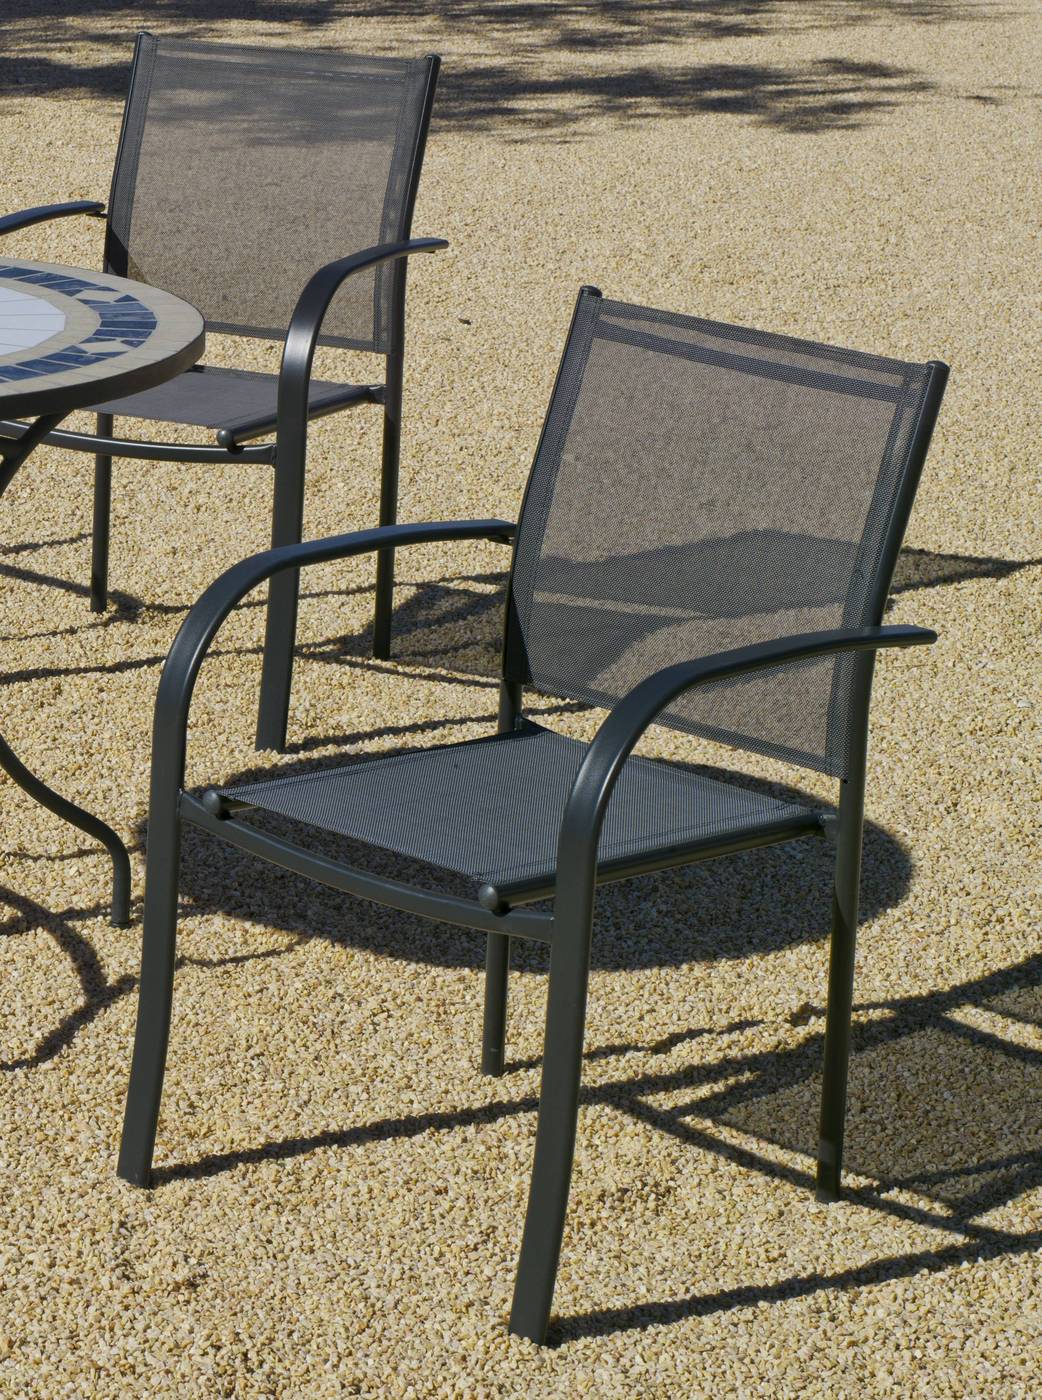 Conjunto Acero Europa-150 - Conjunto de acero color antracita: mesa de 150 cm. Con tapa de cristal templado + 4 sillones de acero y textilen